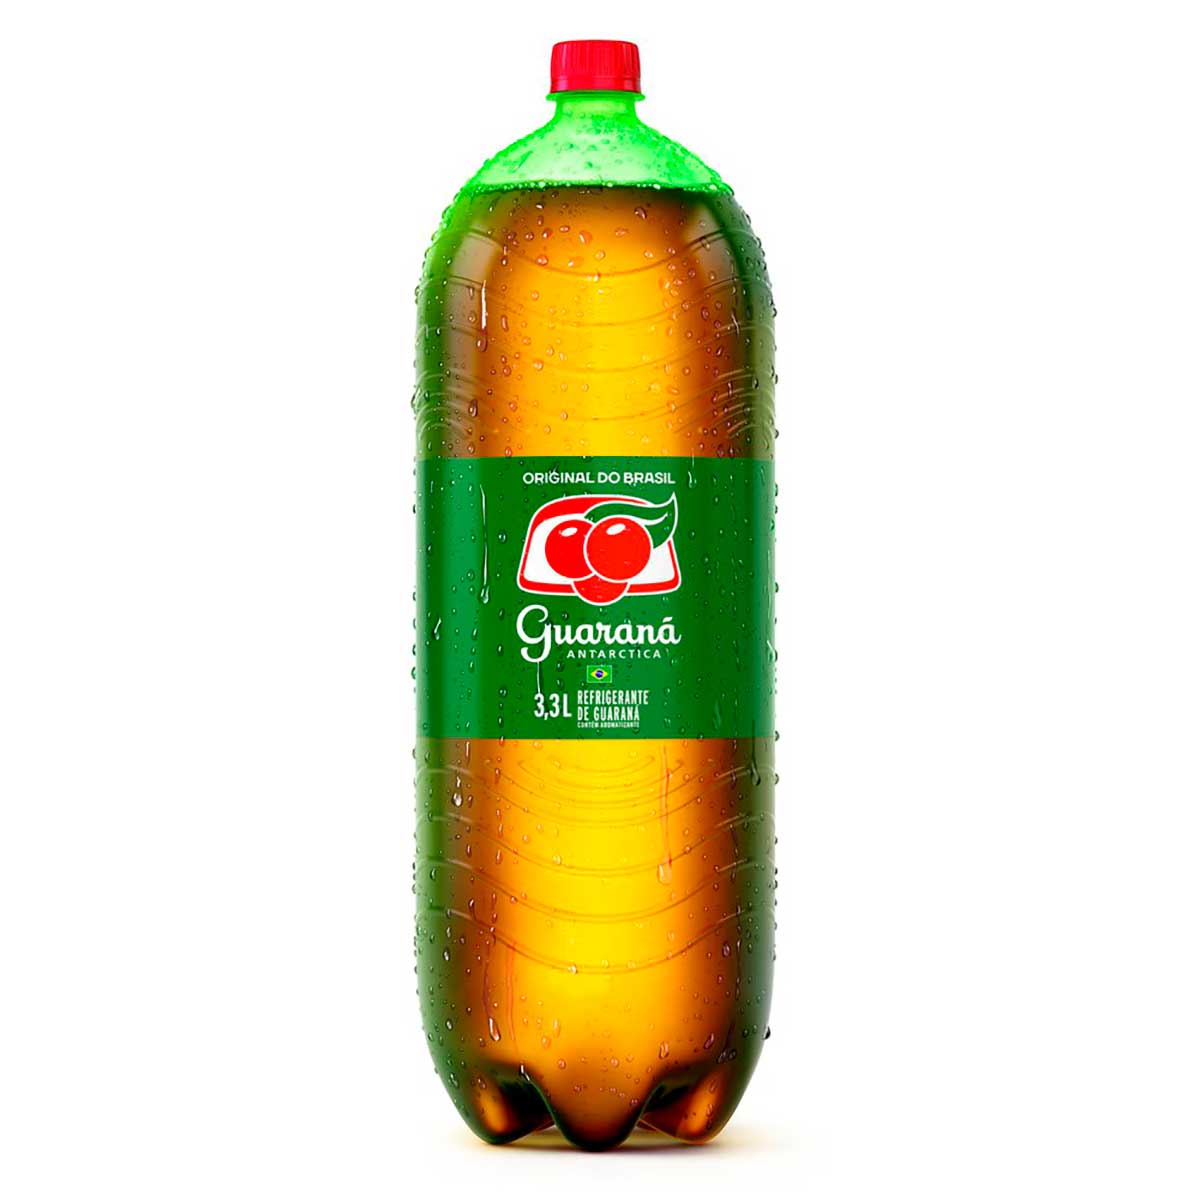 refrigerante-guarana-antarctica-garrafa-3,3l---4-unidades-1.jpg